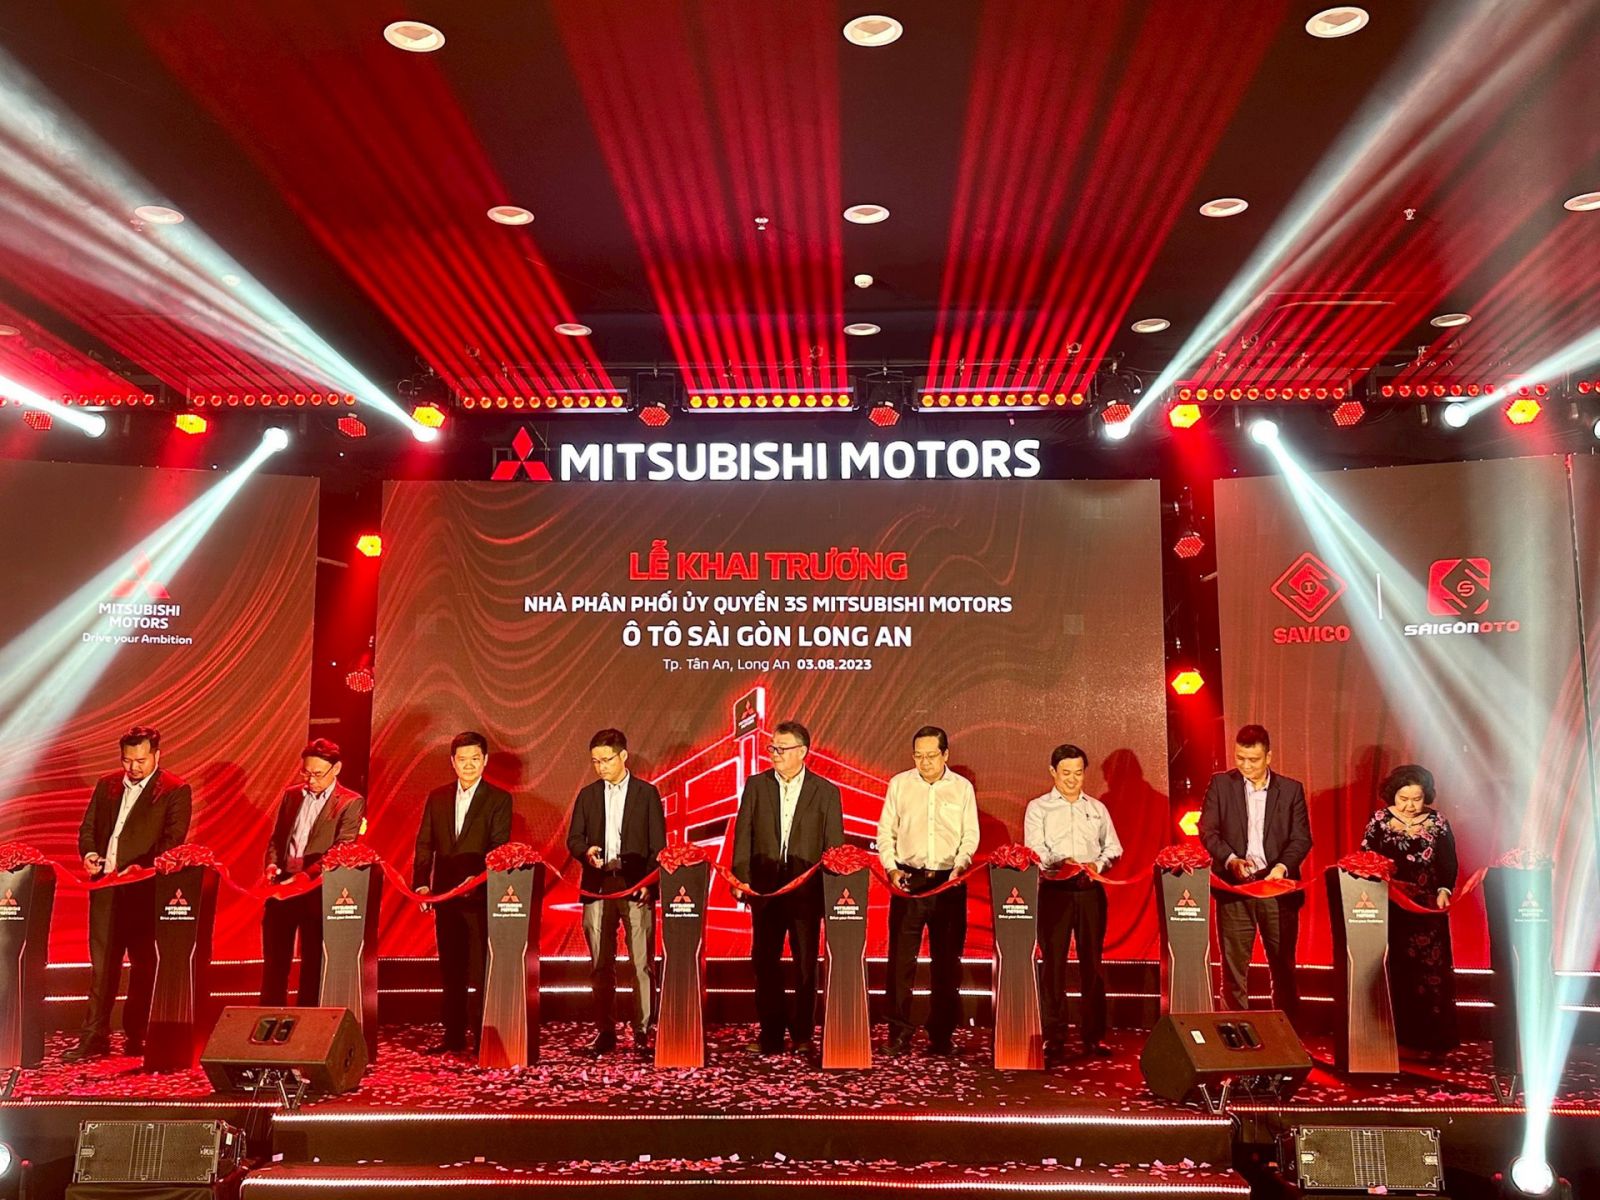 Lễ Khai trương Nhà phân phối uỷ quyền 3S Mitsubishi Motors Ô tô Sài Gòn Long An